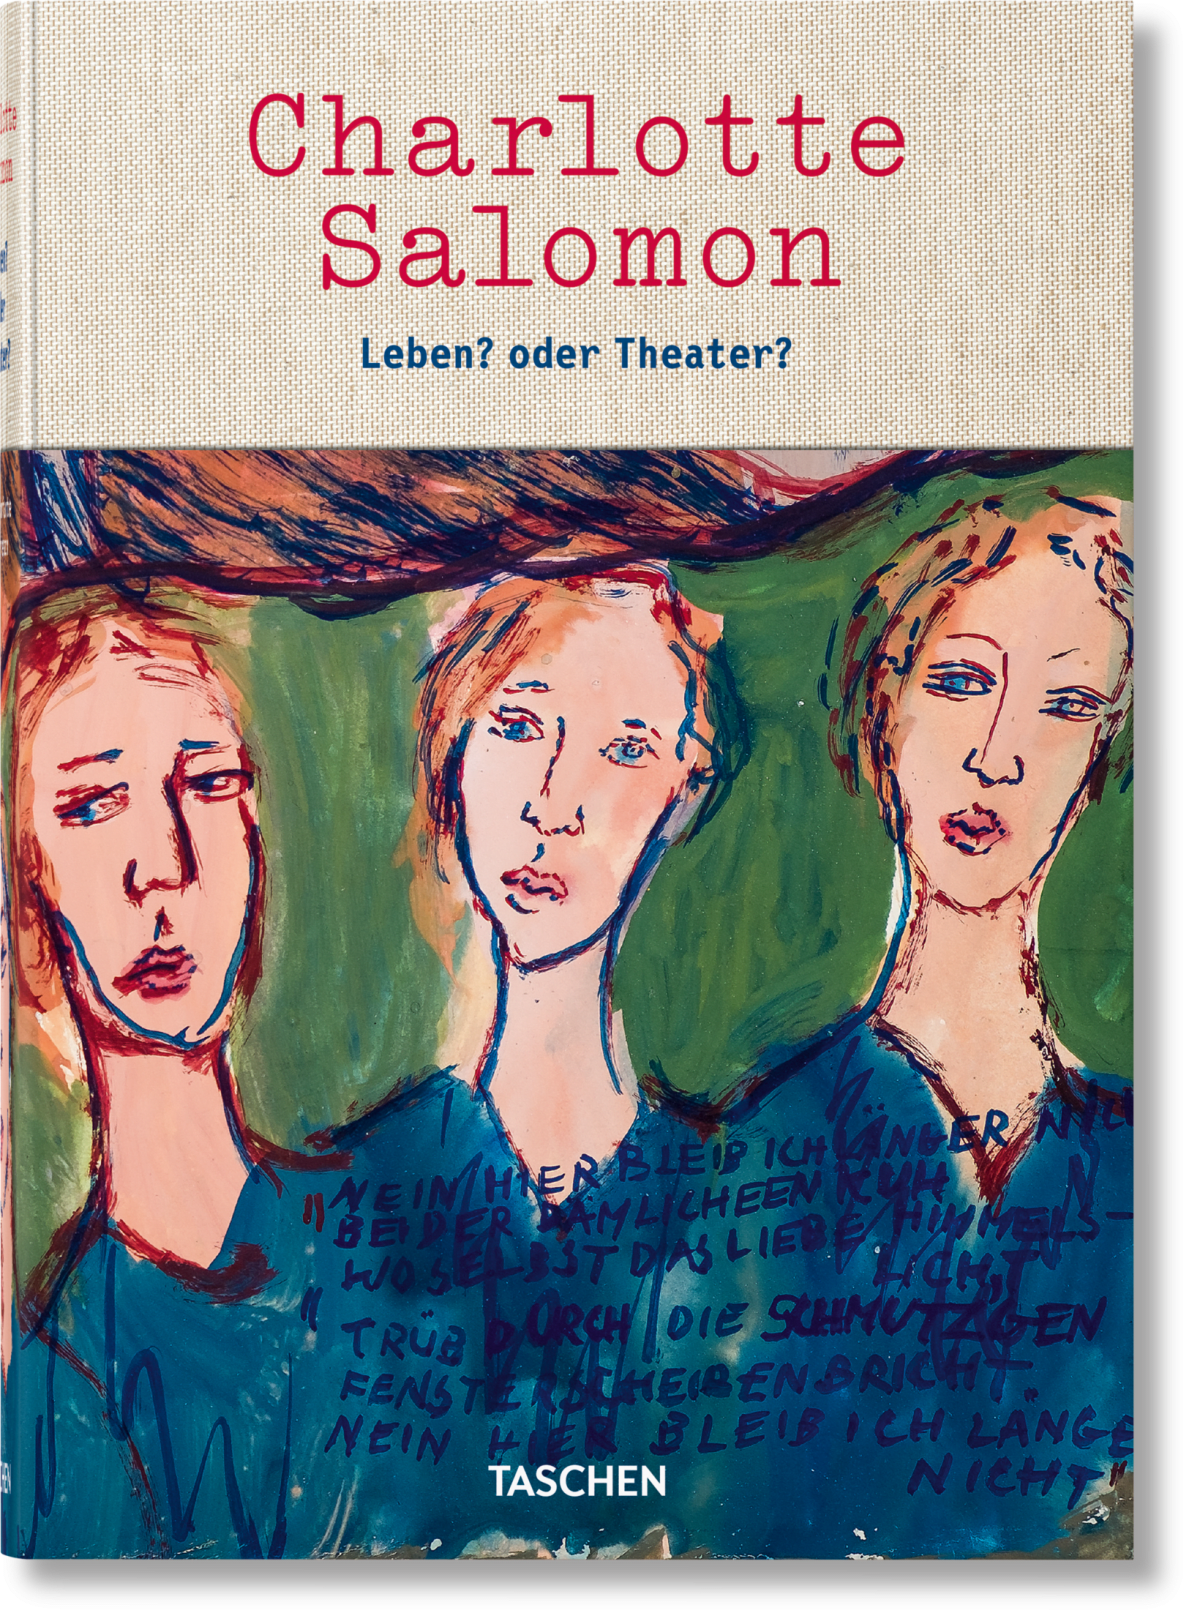 Charlotte Salomon. Life? or Theatre?